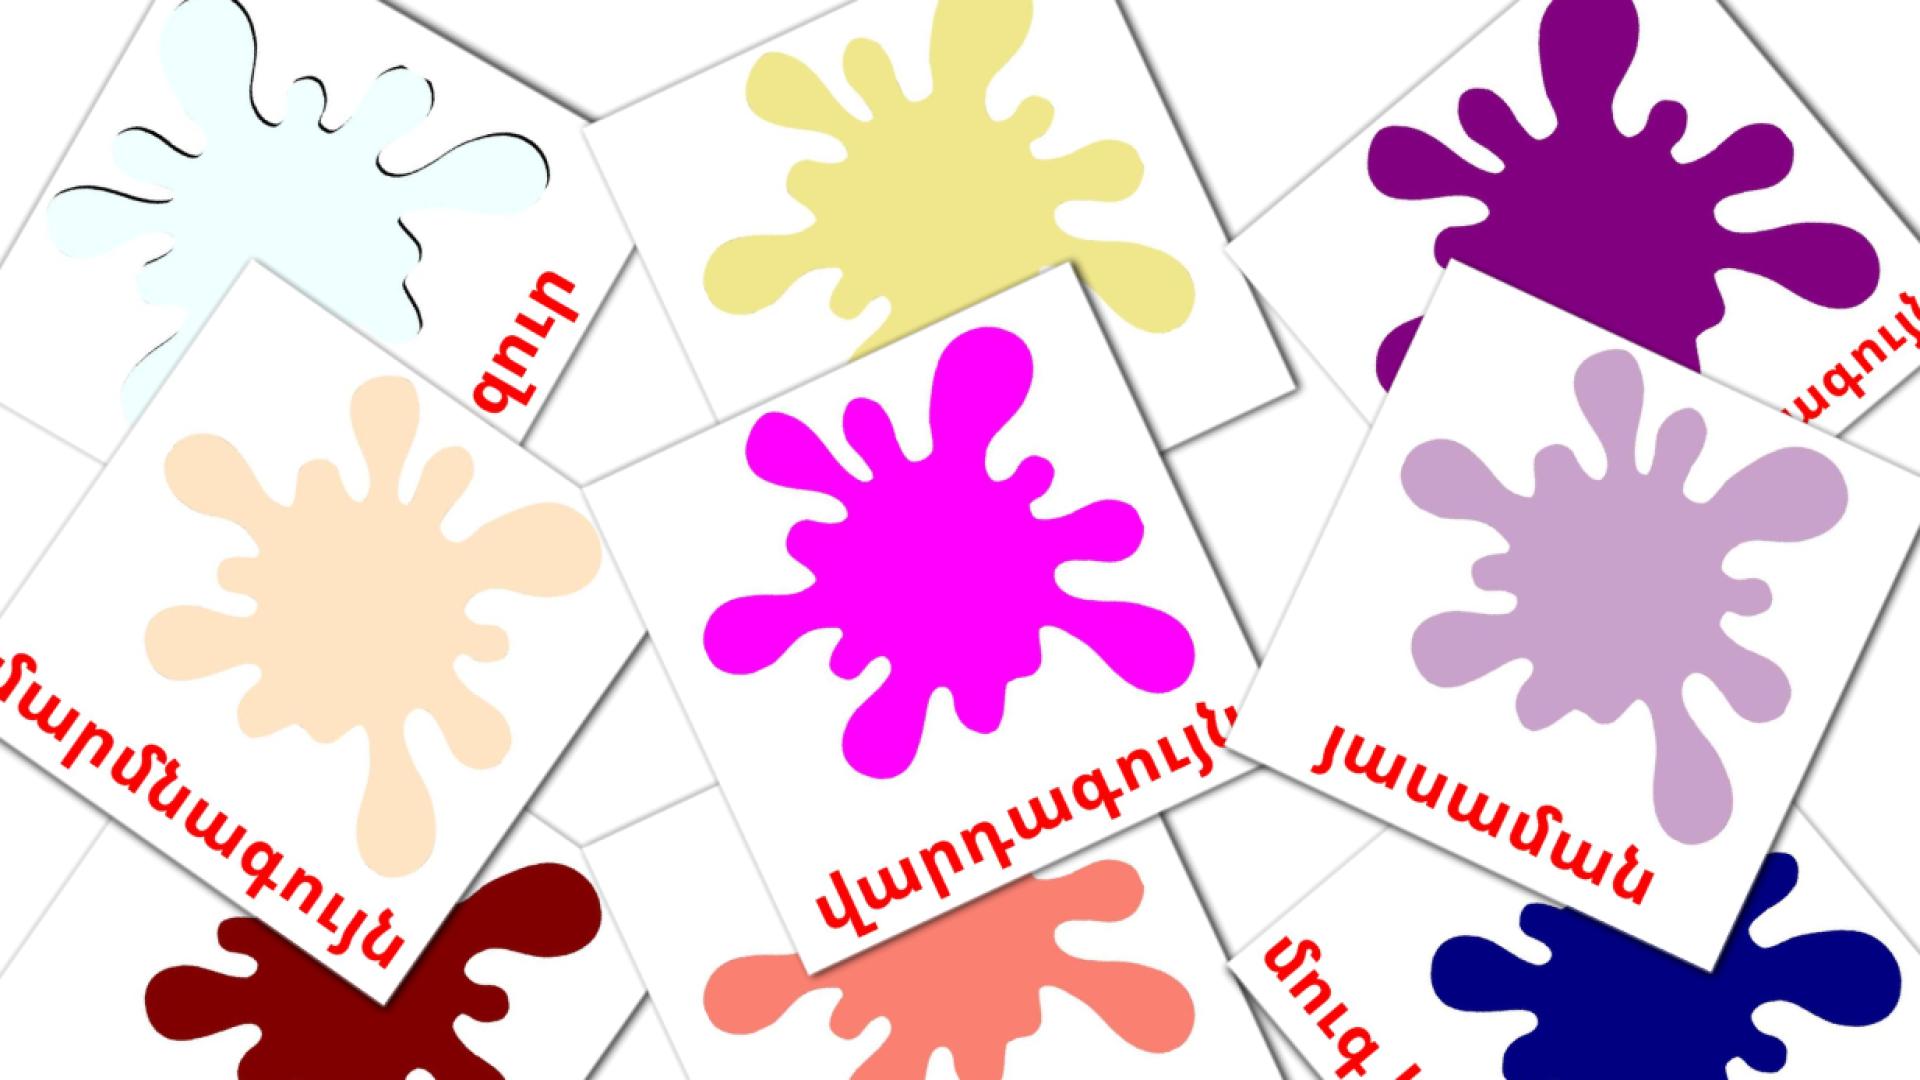 Cores secondarias - Cartões de vocabulário armênio